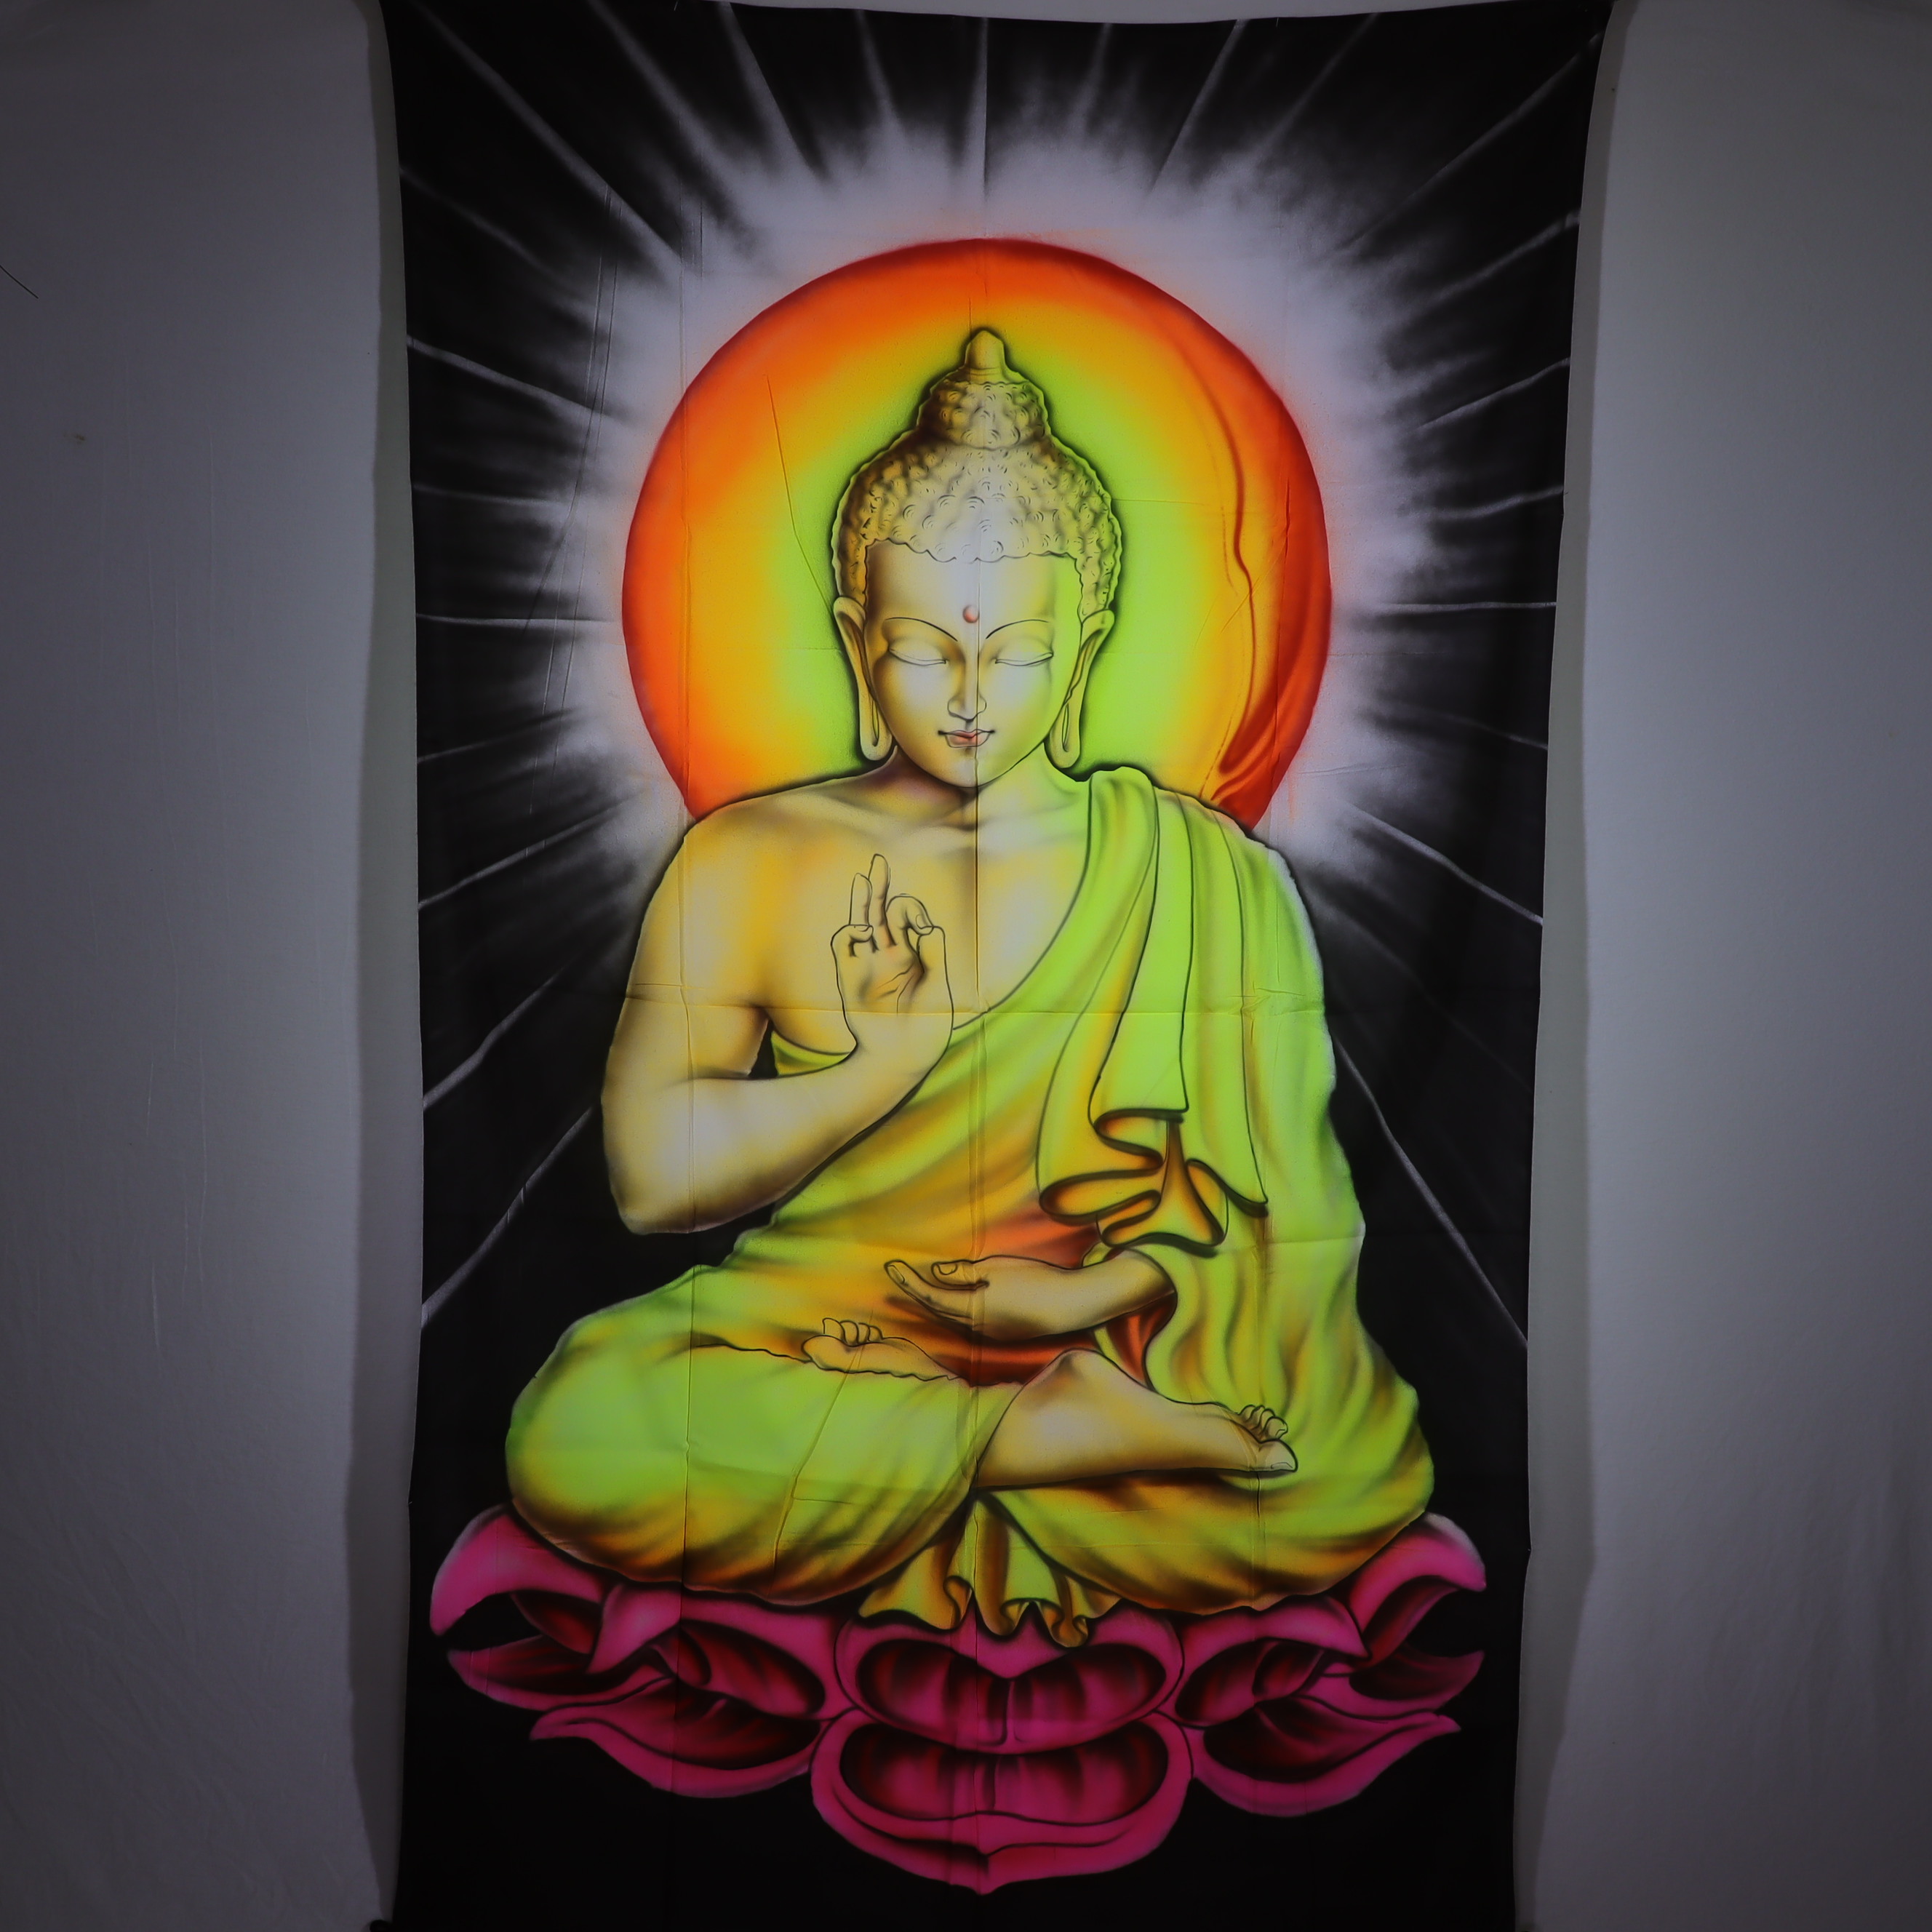 Wandtuch XXL - Buddha der Lehre - handgemalte und bunte Schwarzlicht UV aktiv Farben - 120 x 190